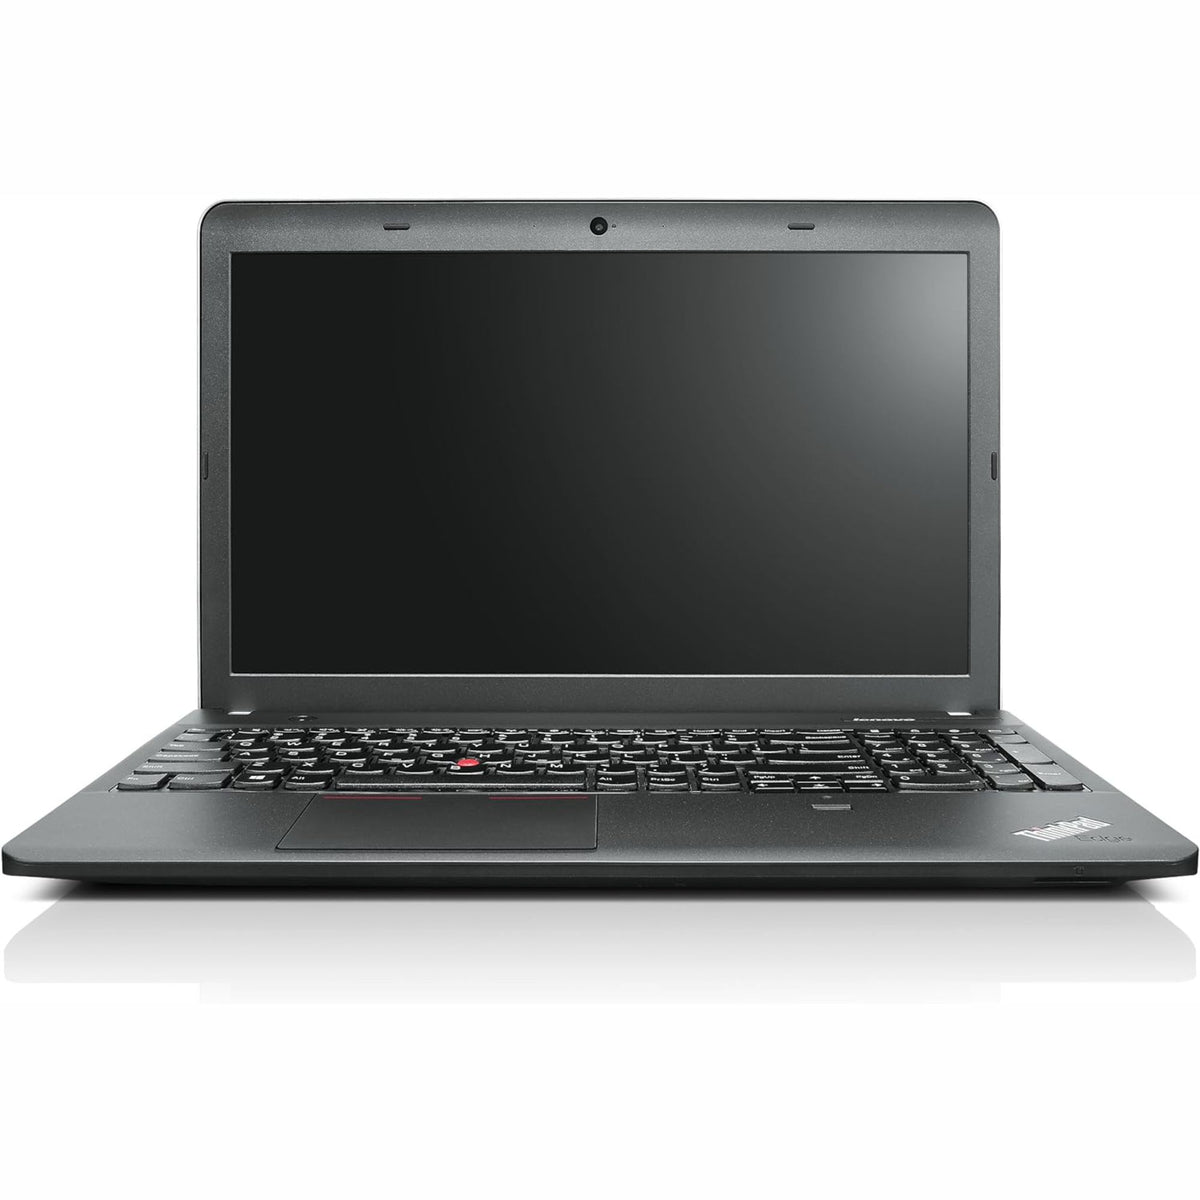 Lenovo Thinkpad e540 15.6" Intel Core i5-4800 8GB 256GB Ssd Ref +A WF234